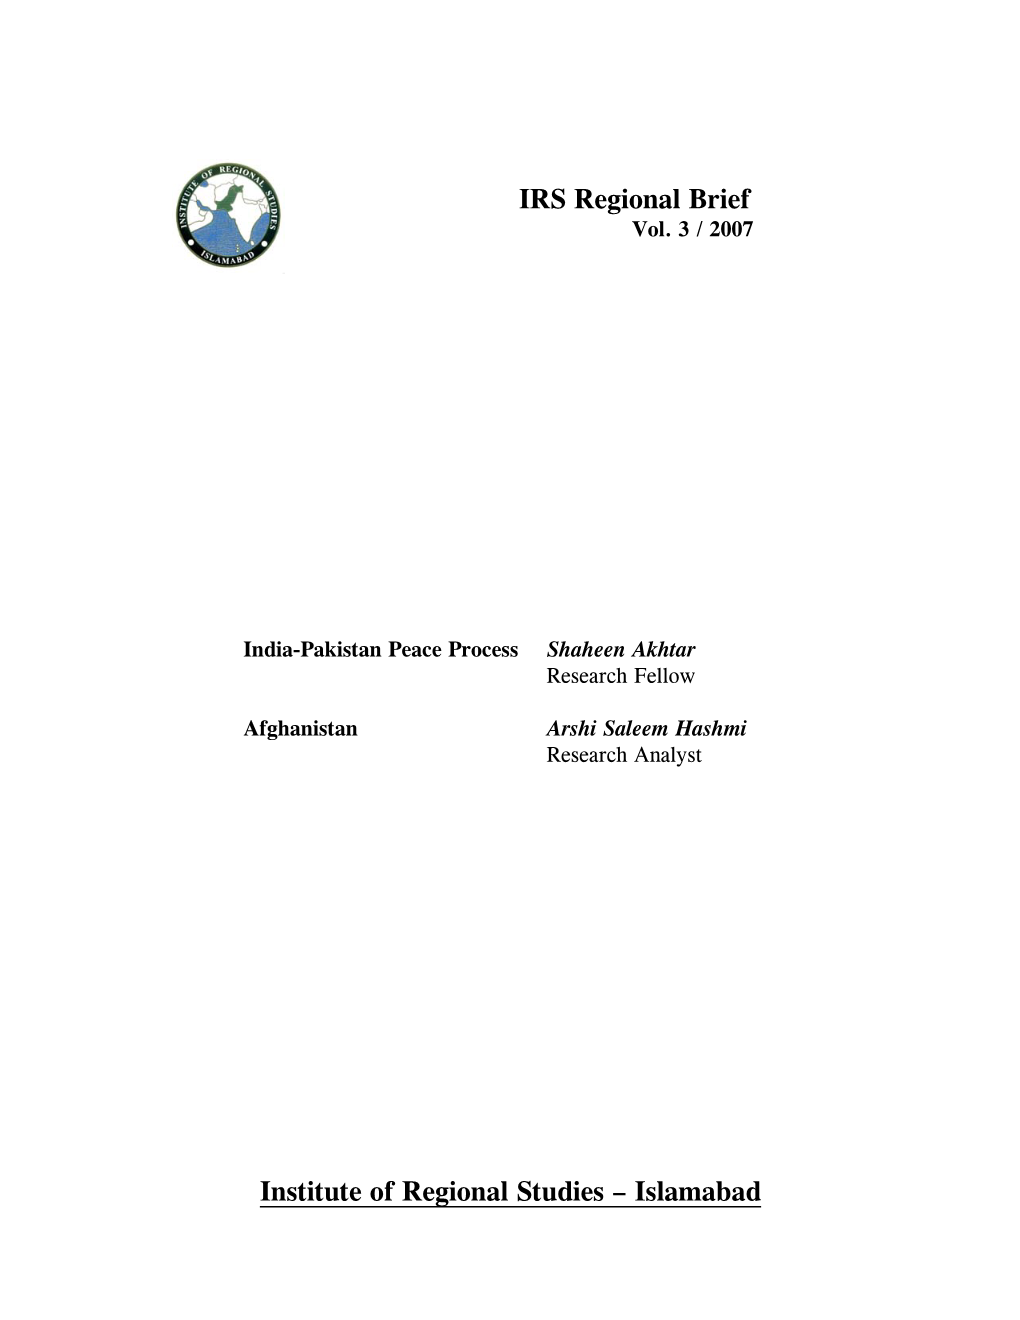 IRS Regional Brief Institute of Regional Studies – Islamabad